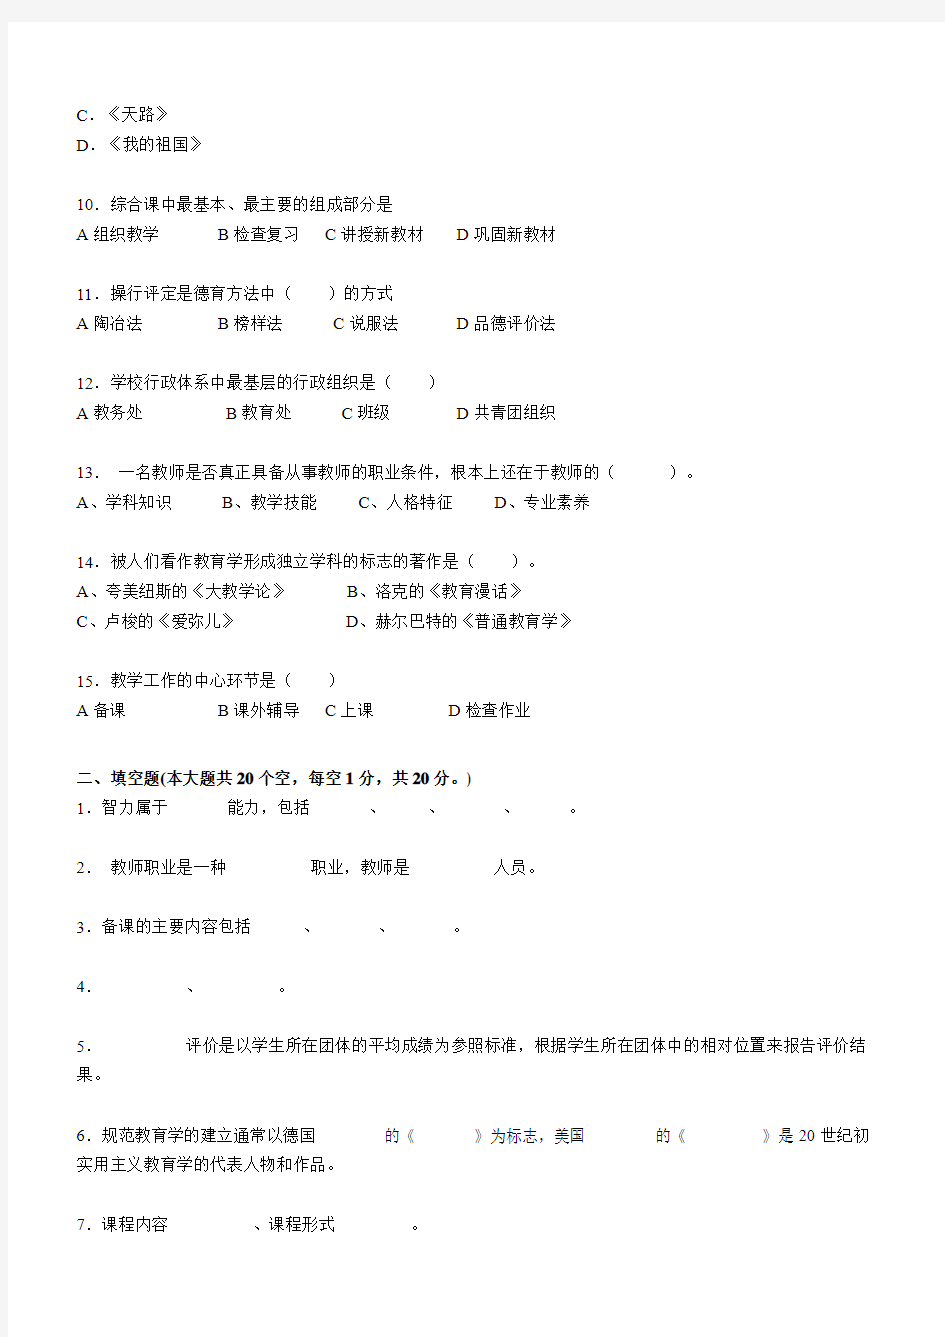 上海教师资格证考试《综合素质》考试题